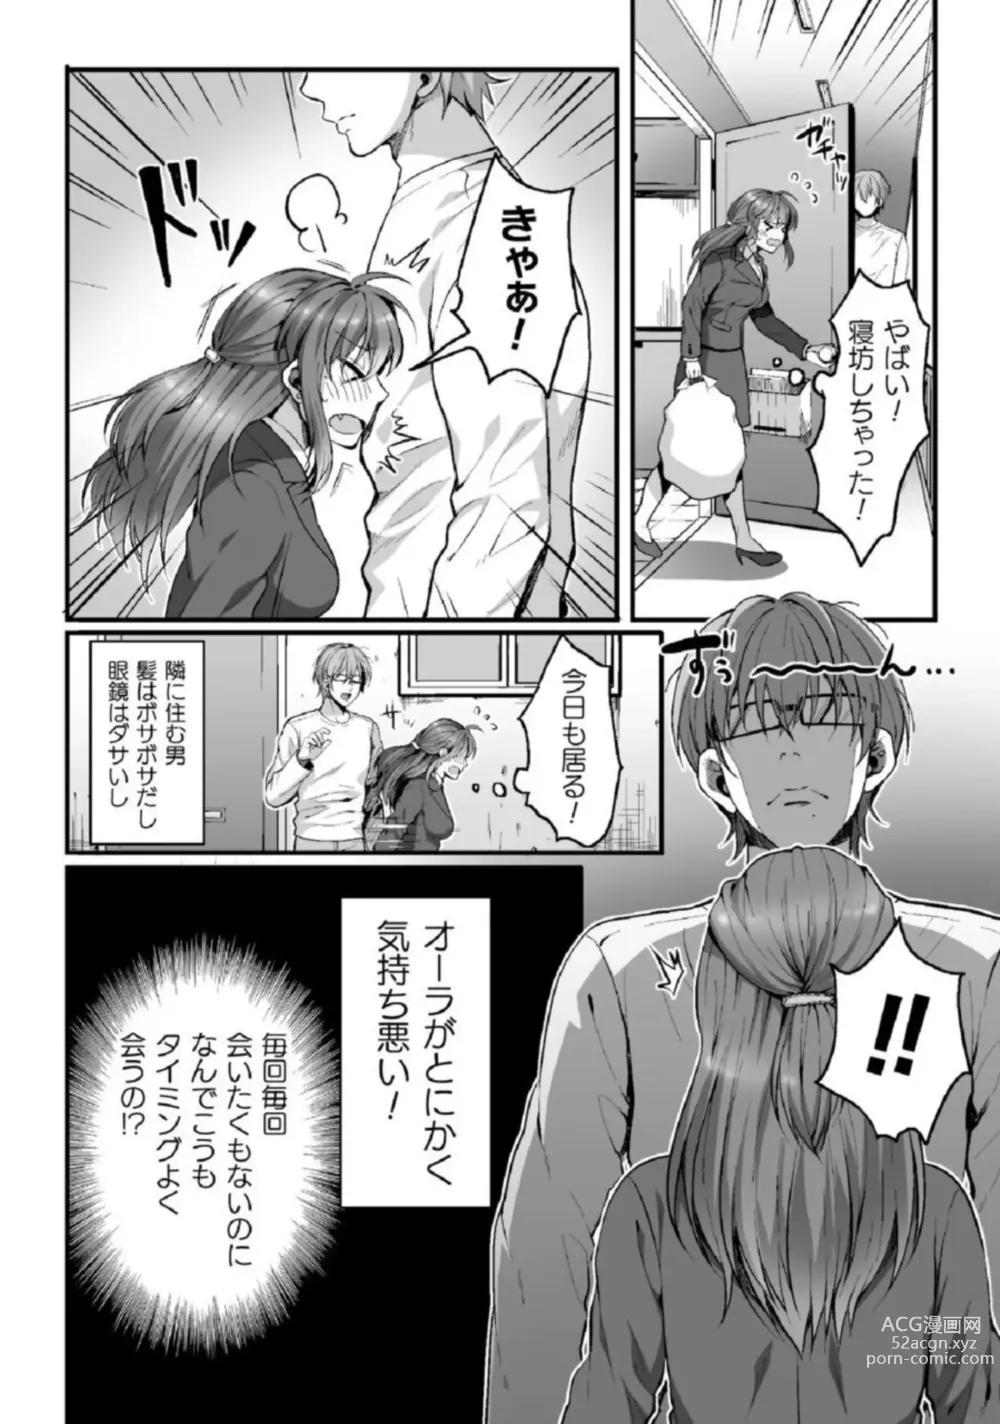 Page 4 of manga Shokorashukureansorojī Ibitsuai ～ Yandere Kareshi no Omoi ai ni Kakowarete ～Vol.2